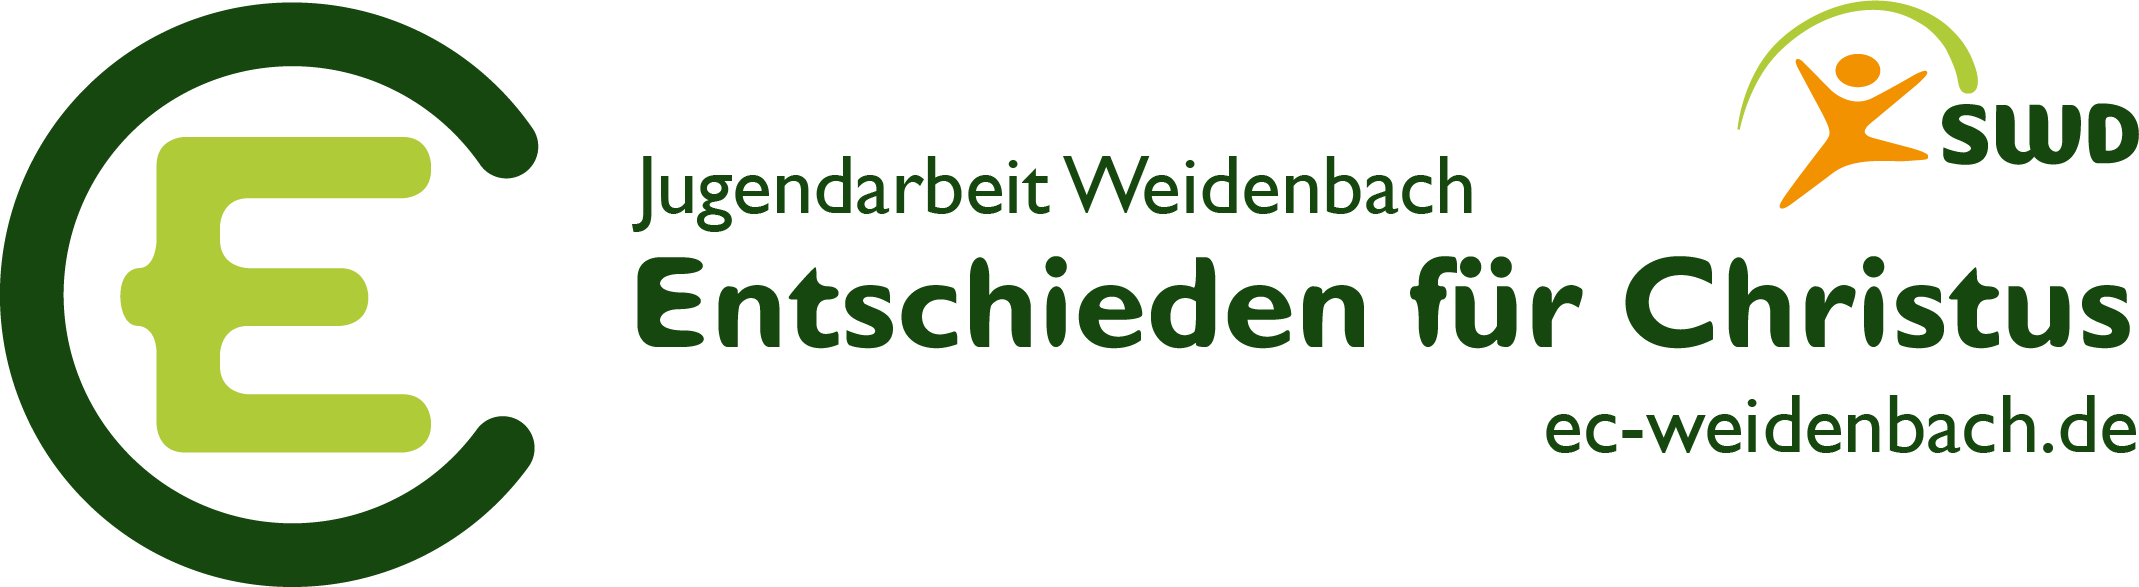 EC Weidenbach